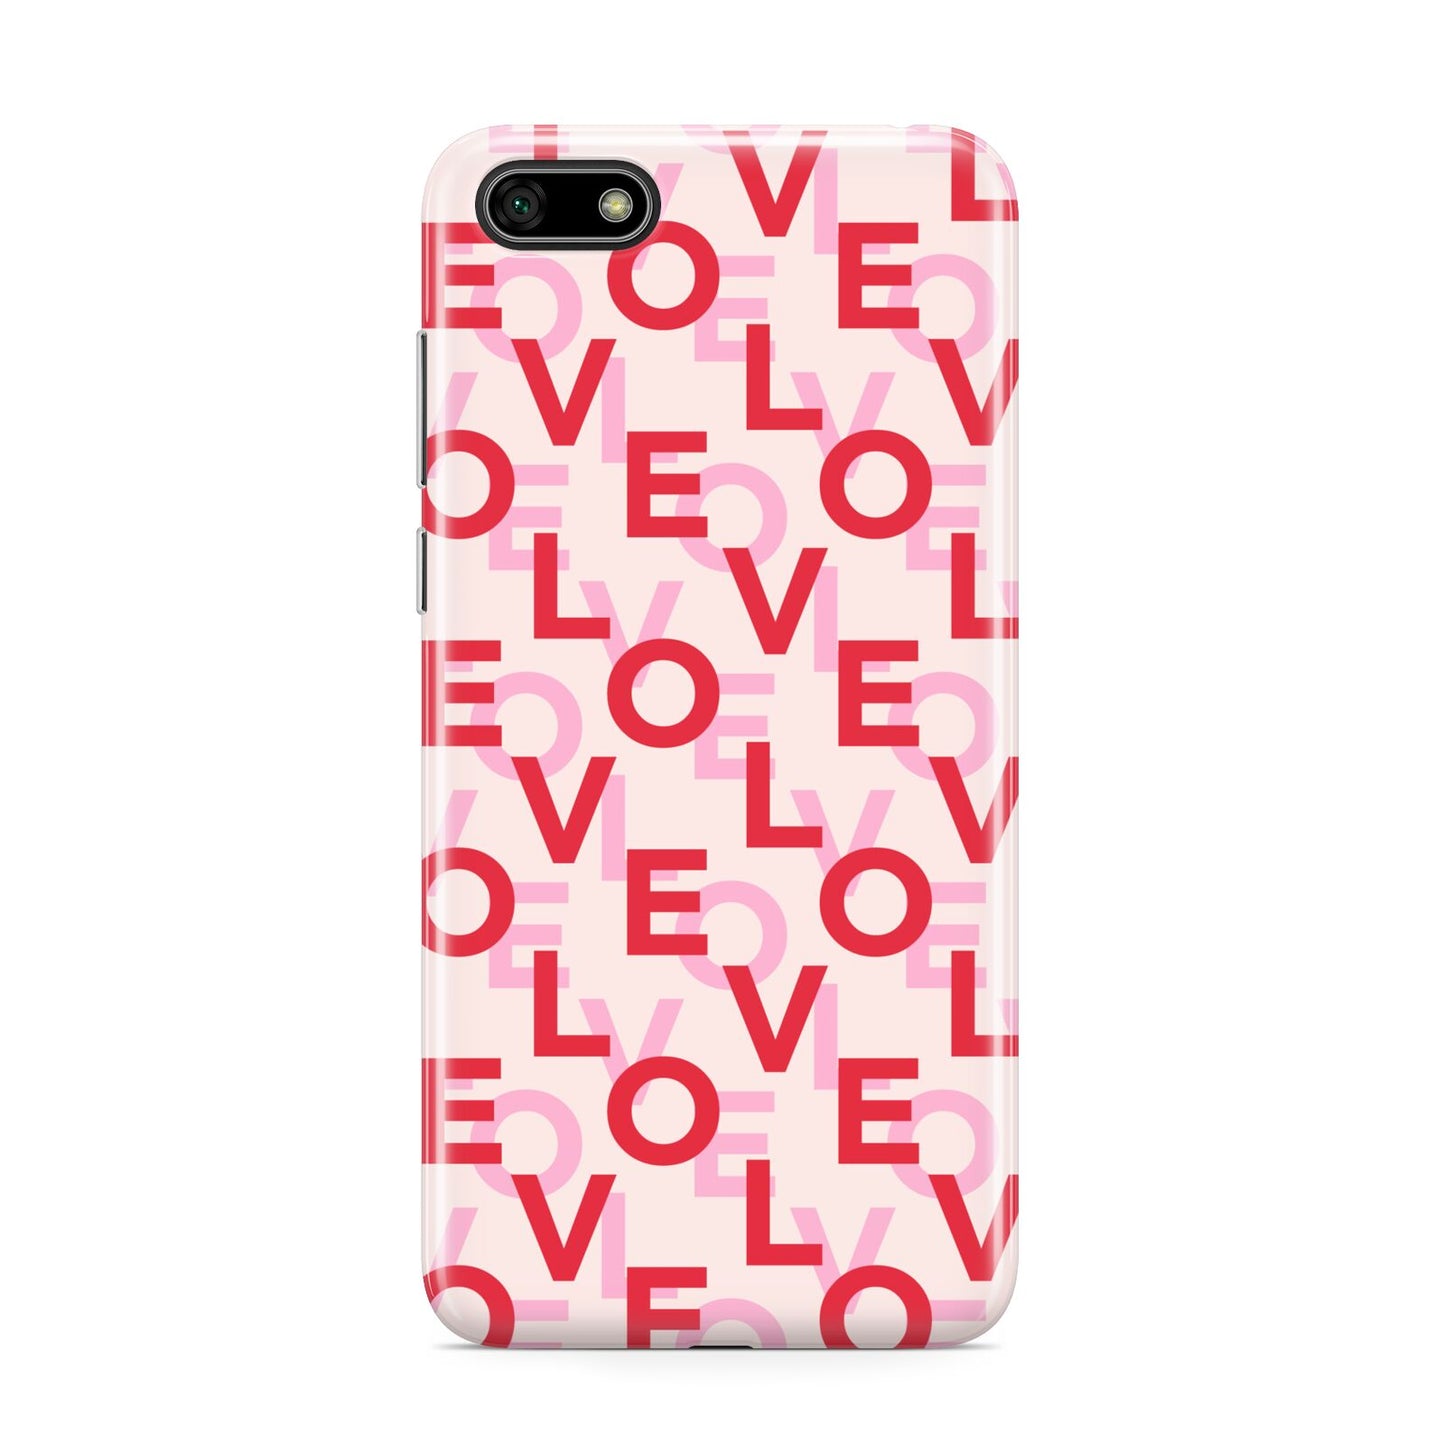 Love Valentine Huawei Y5 Prime 2018 Phone Case